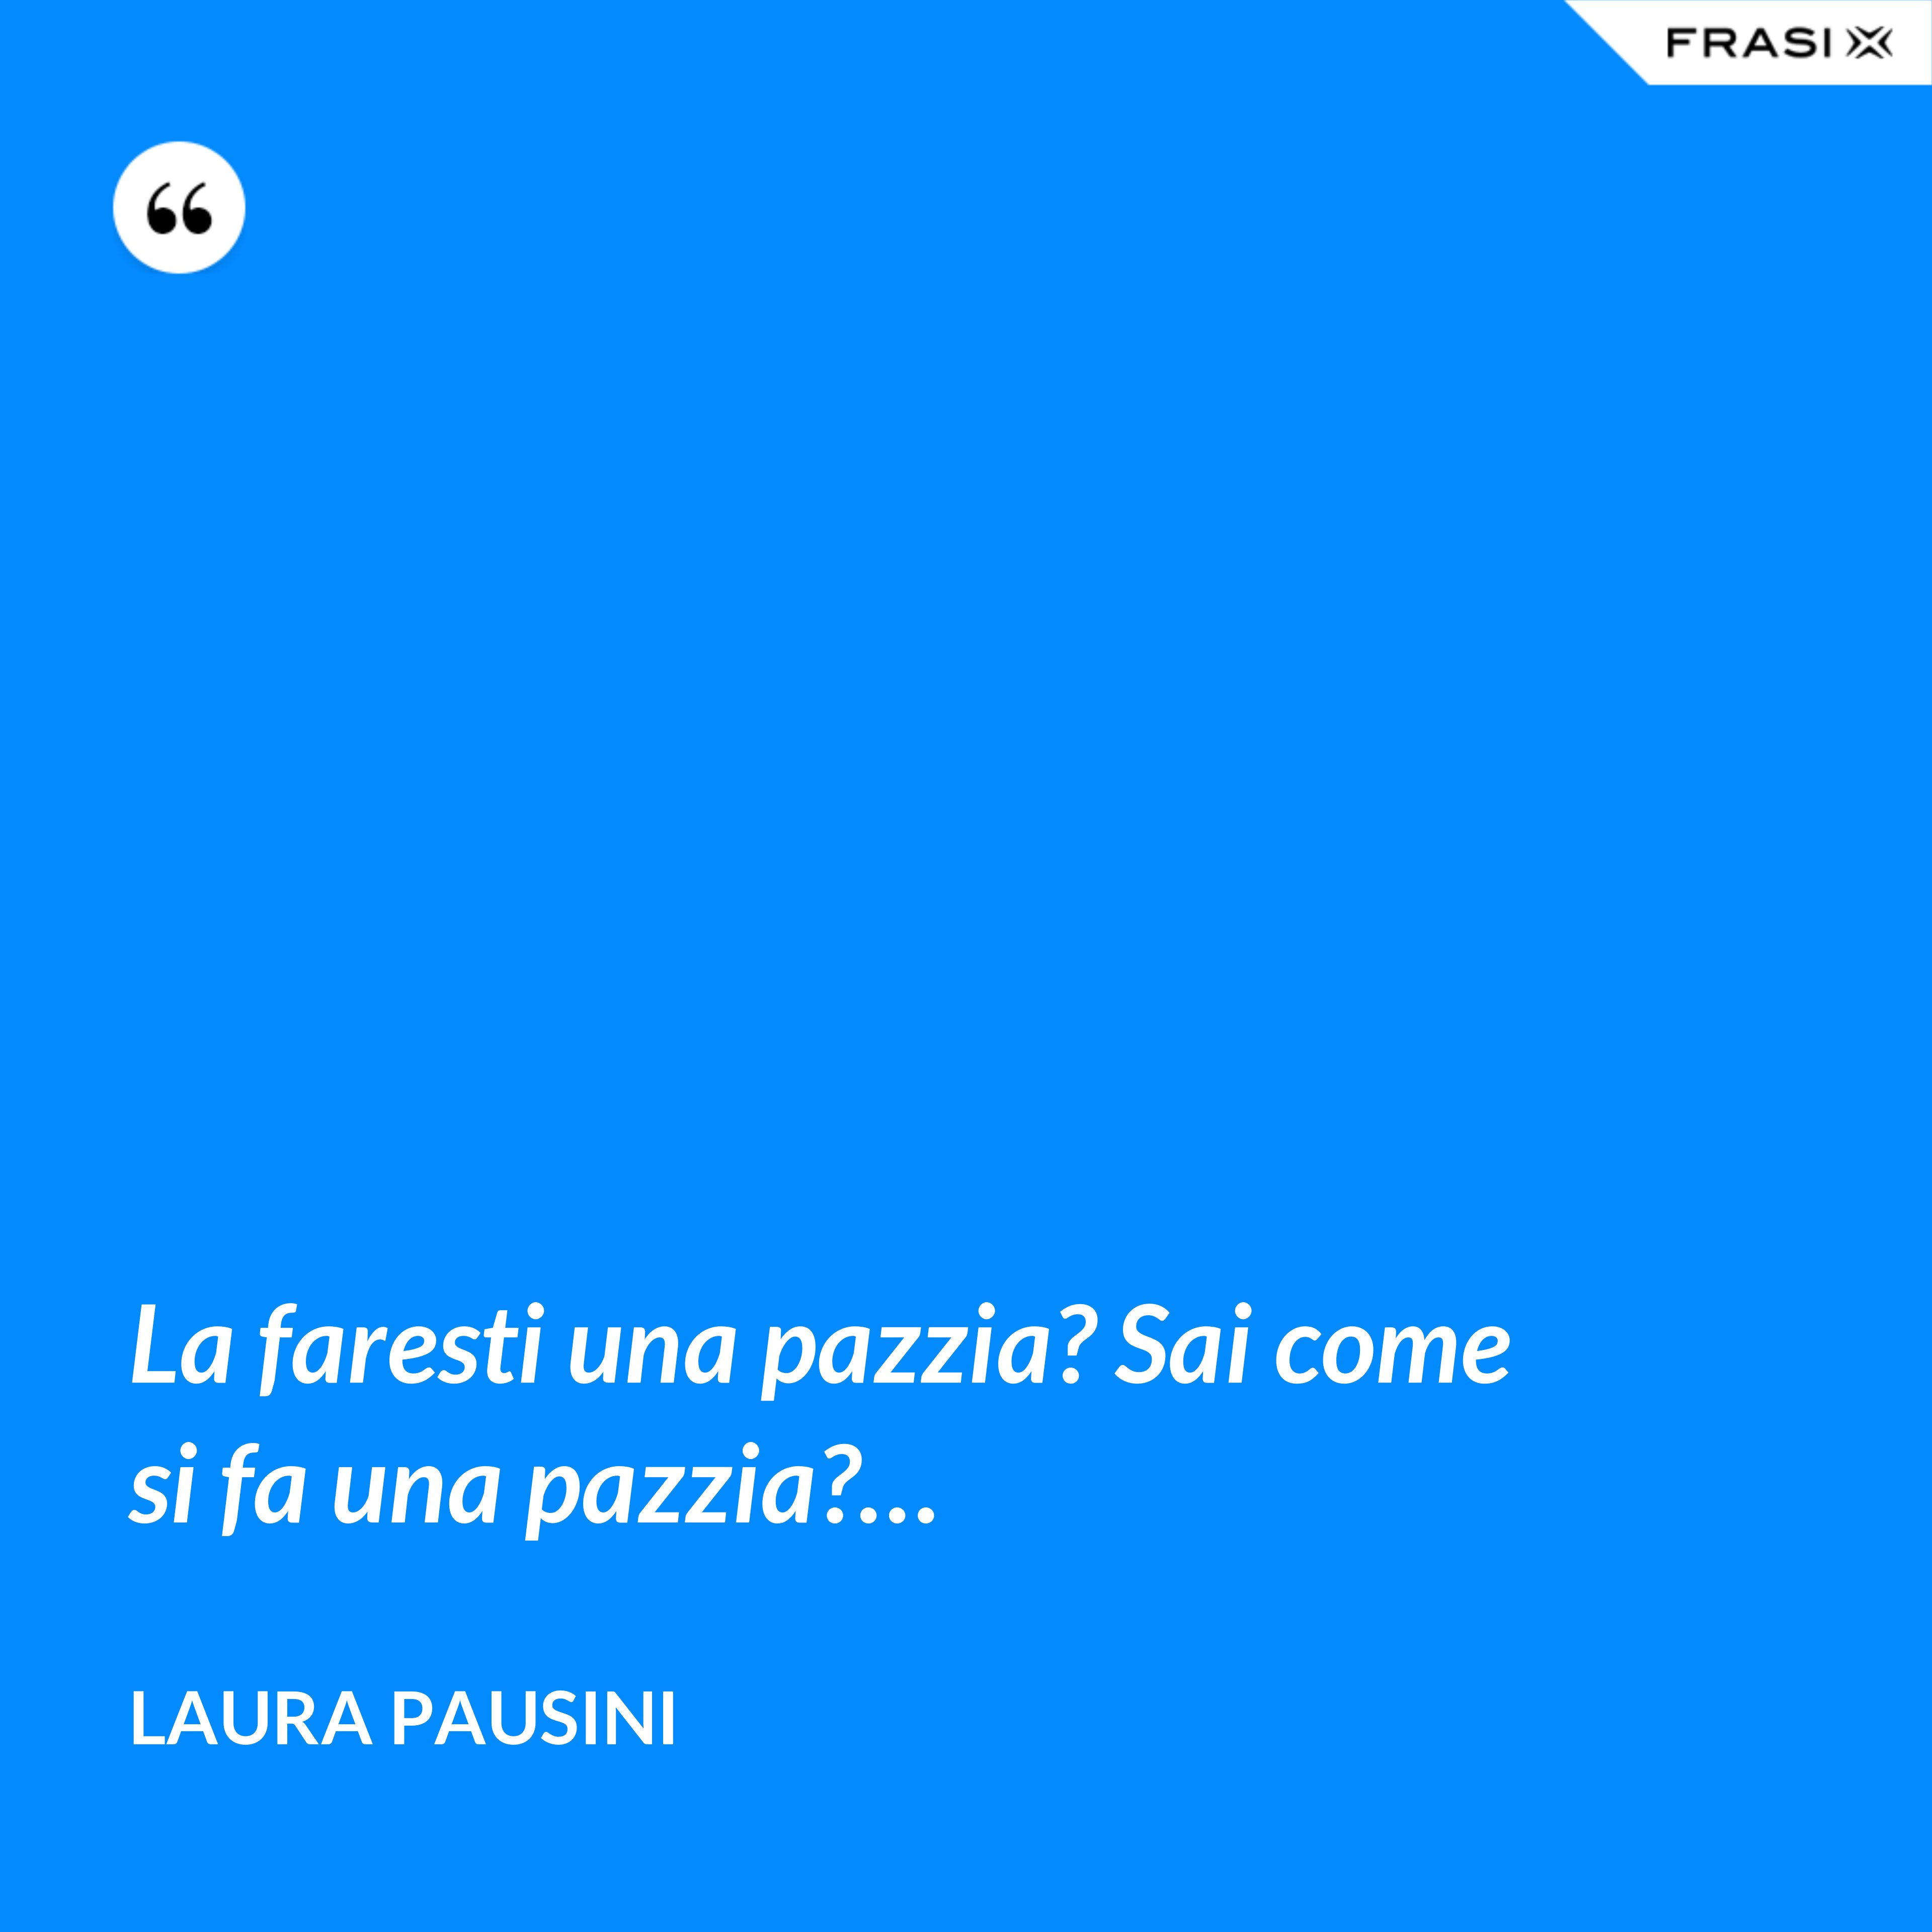 La faresti una pazzia? Sai come si fa una pazzia?… - Laura Pausini